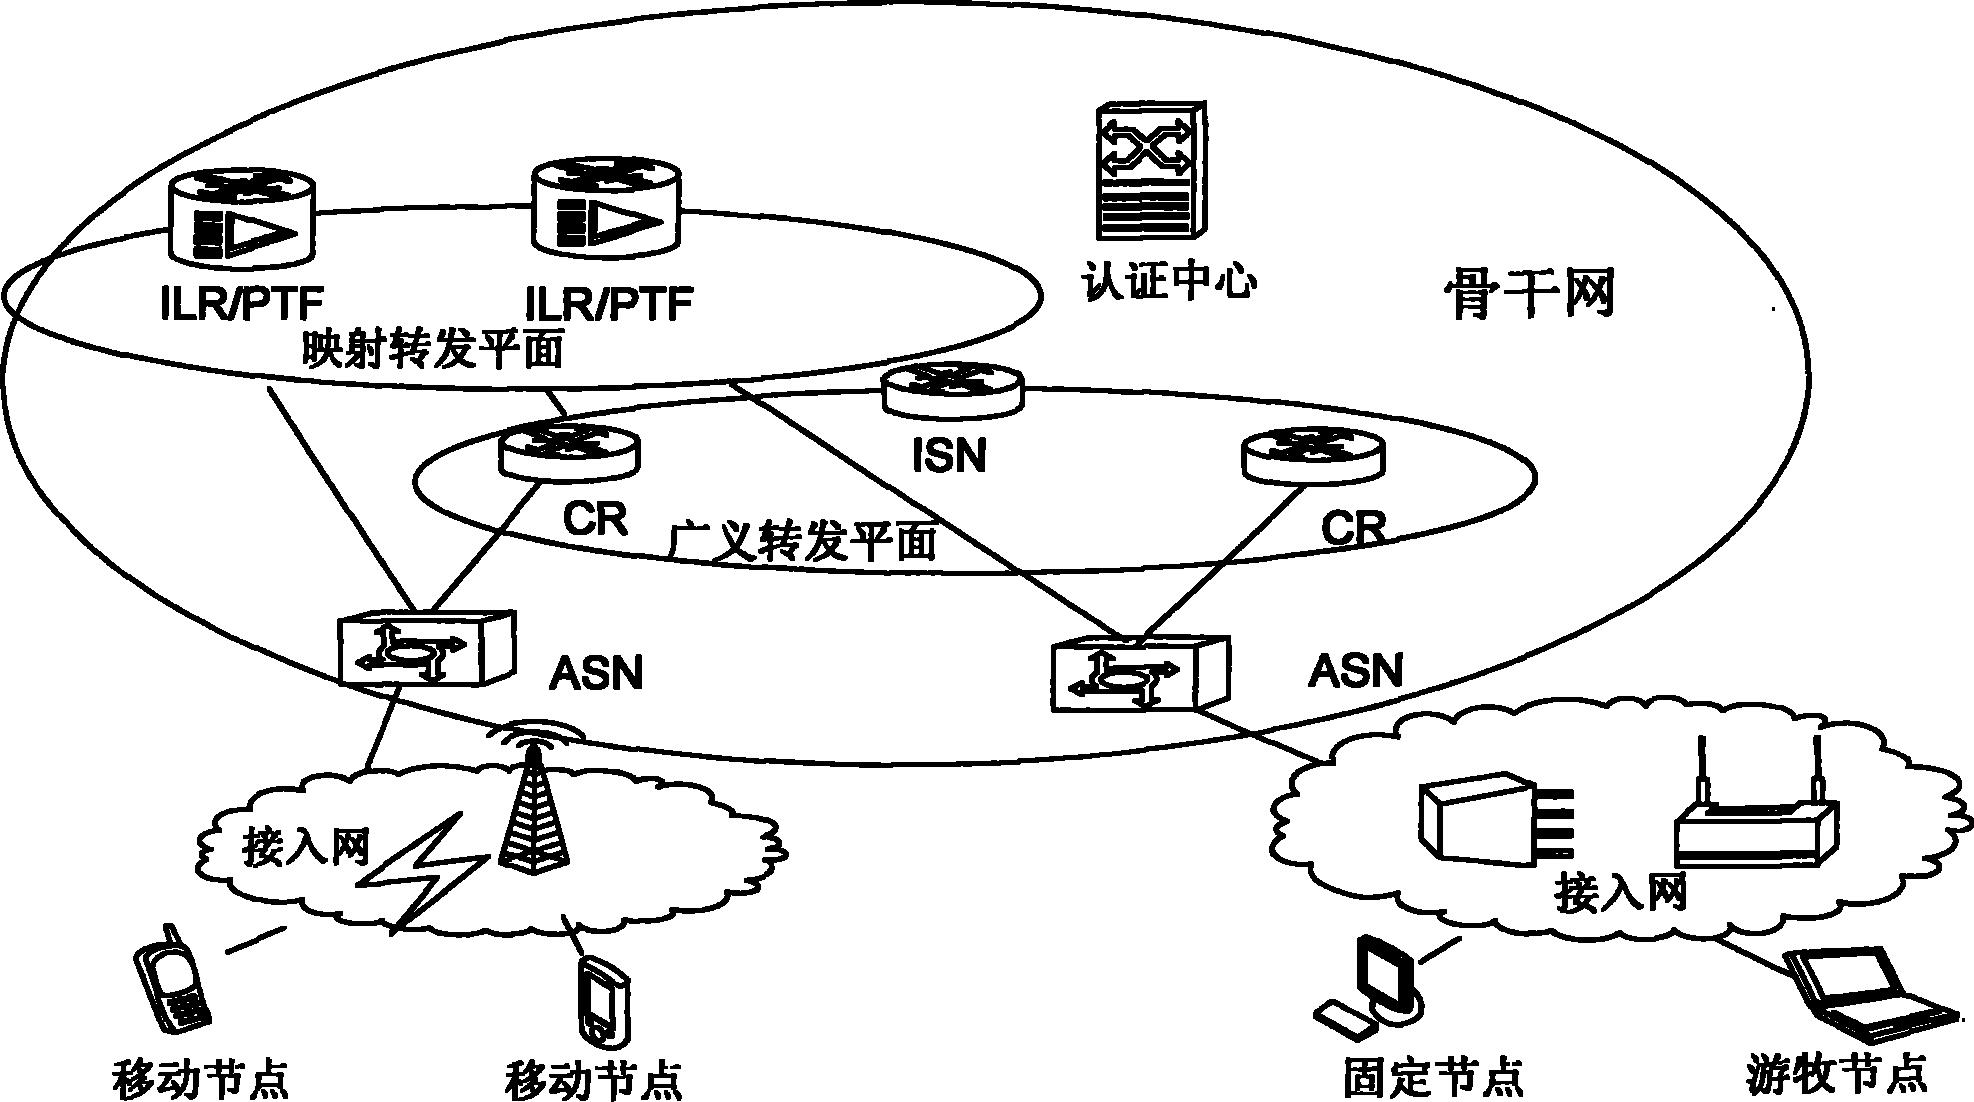 该网络包括接入网和骨干网,所述接入网与骨干网在拓扑关系上没有重叠